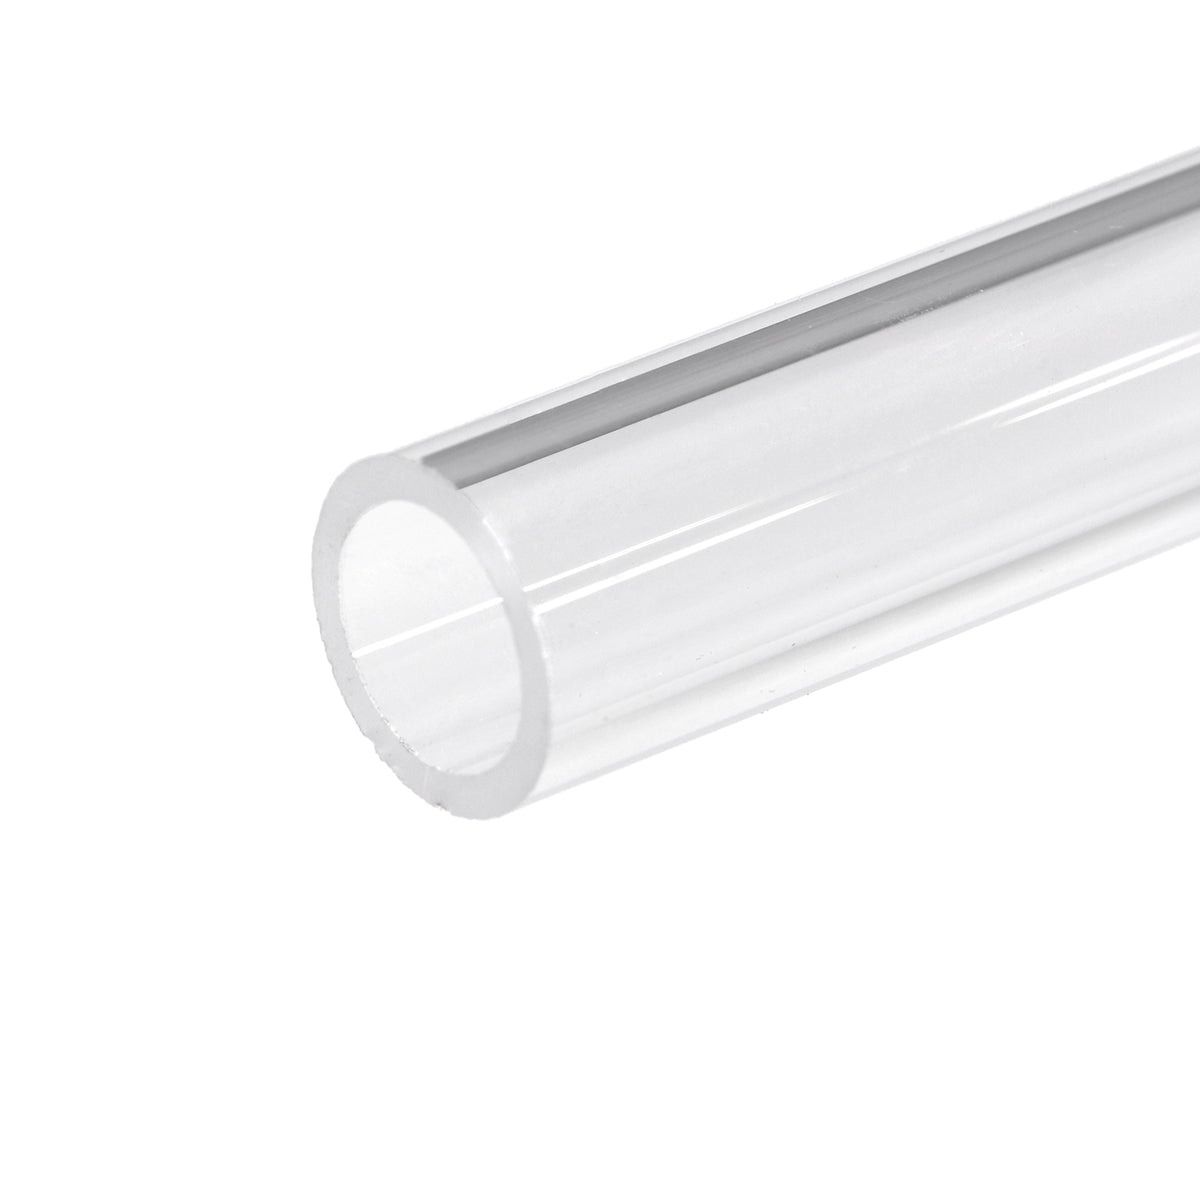 G64-302208 quartz glass tube